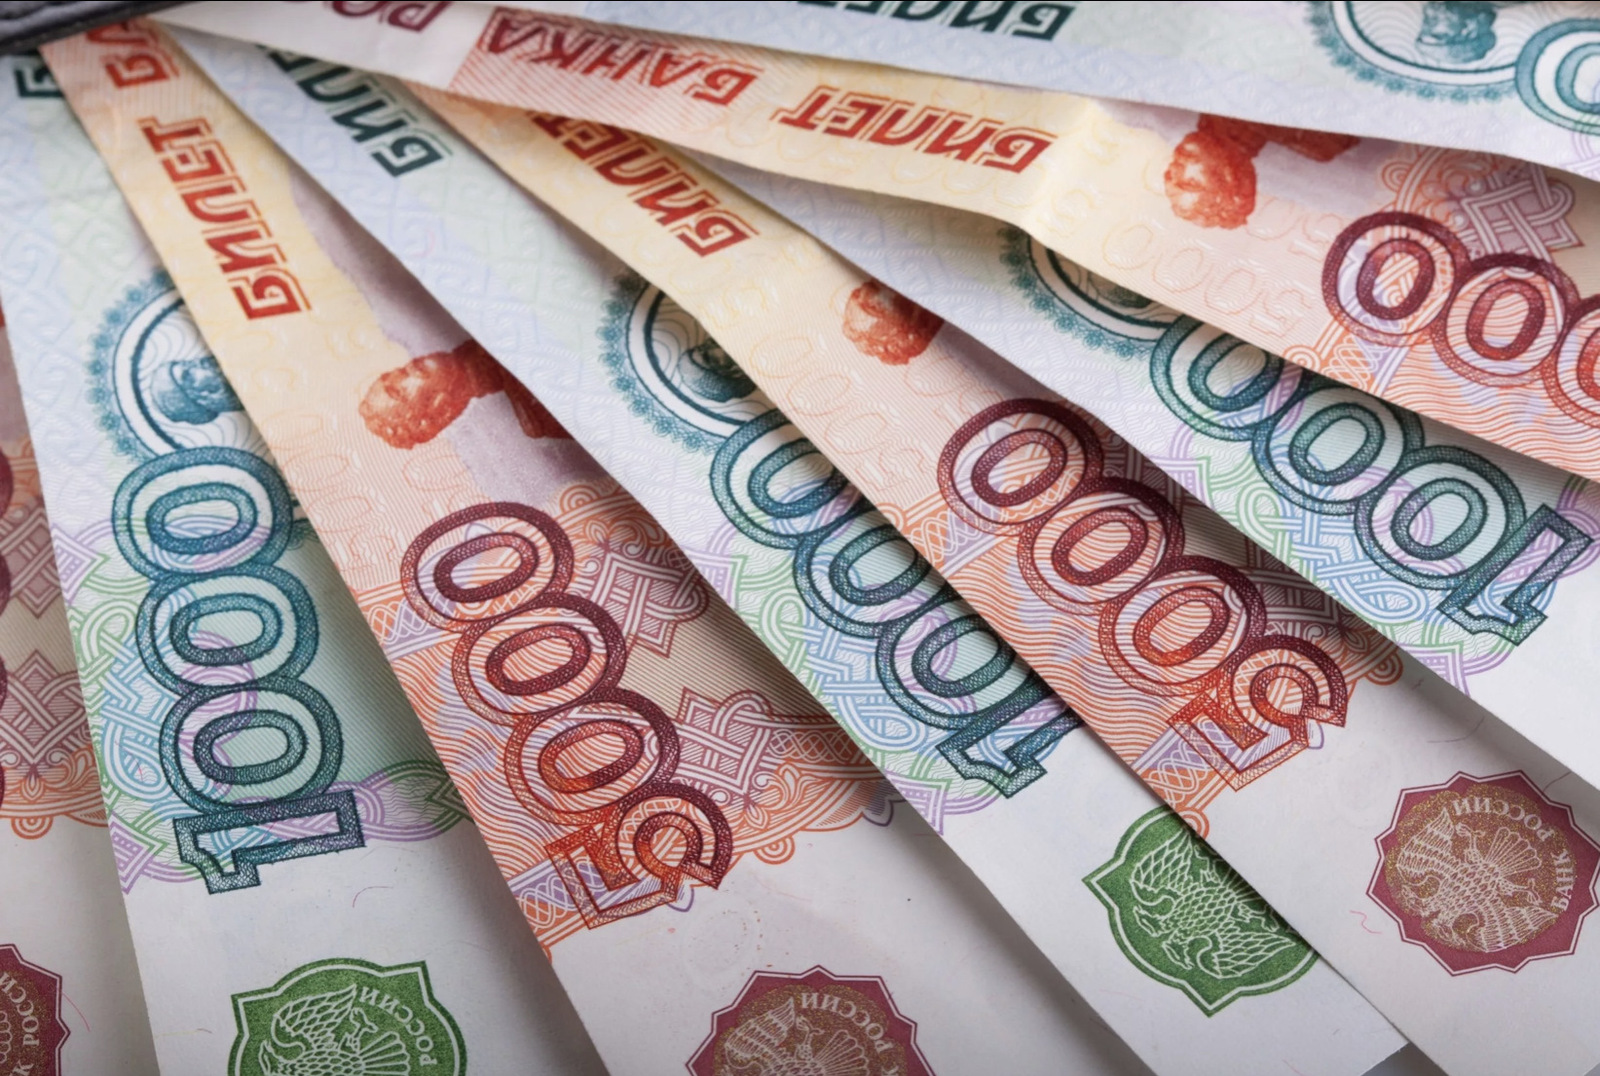 Социальные пенсии в России будут проиндексированы еще на 3,3% с 1 апреля